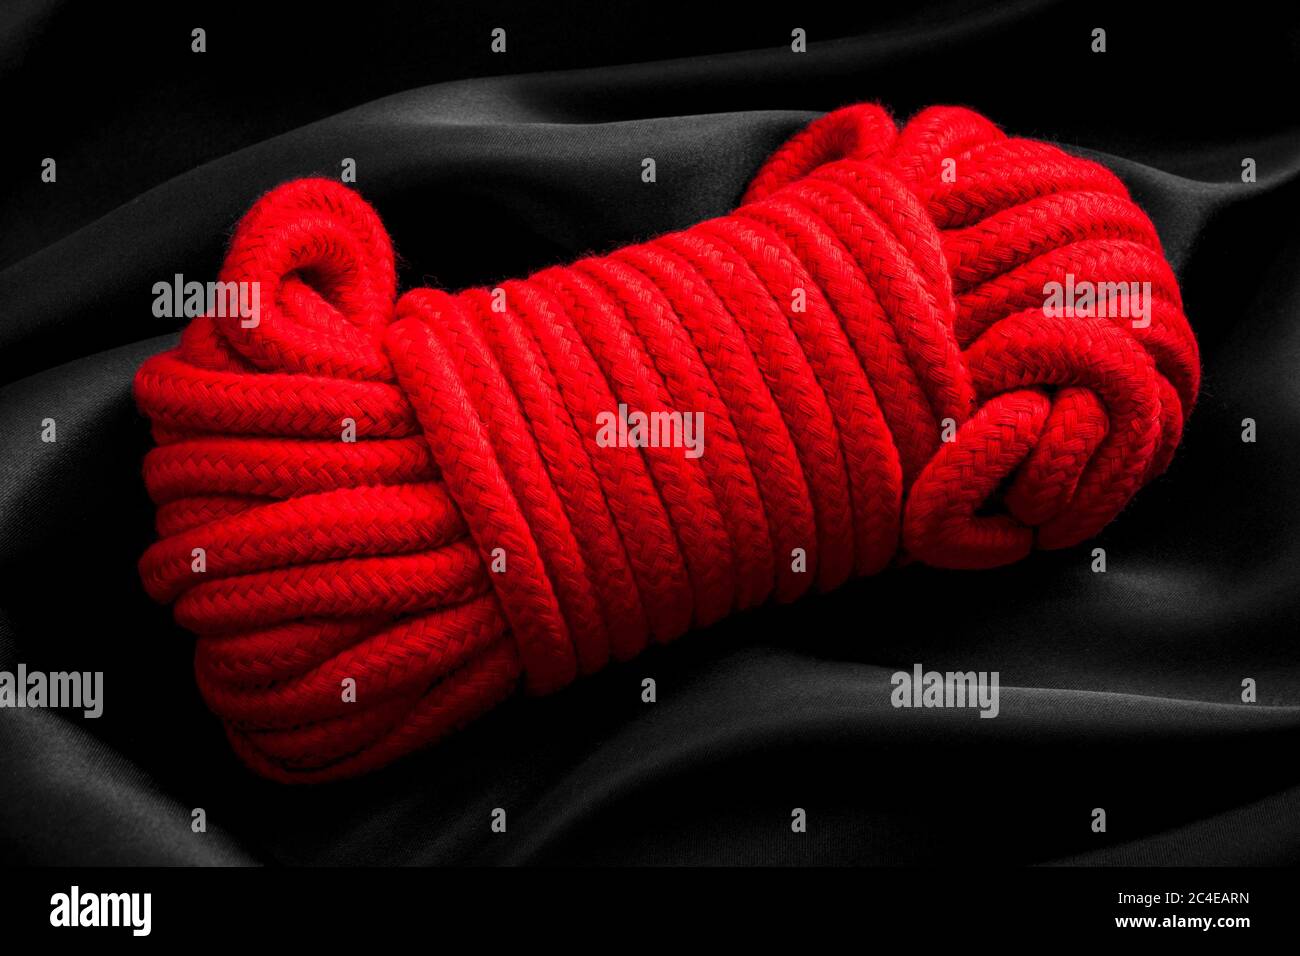 Hédonisme, jeux de corde pour adultes et concept de style de vie BDSM avec gros plan sur une boule de corde rouge, utilisé dans les arts érotiques japonais de kinbaku, sinju et Banque D'Images